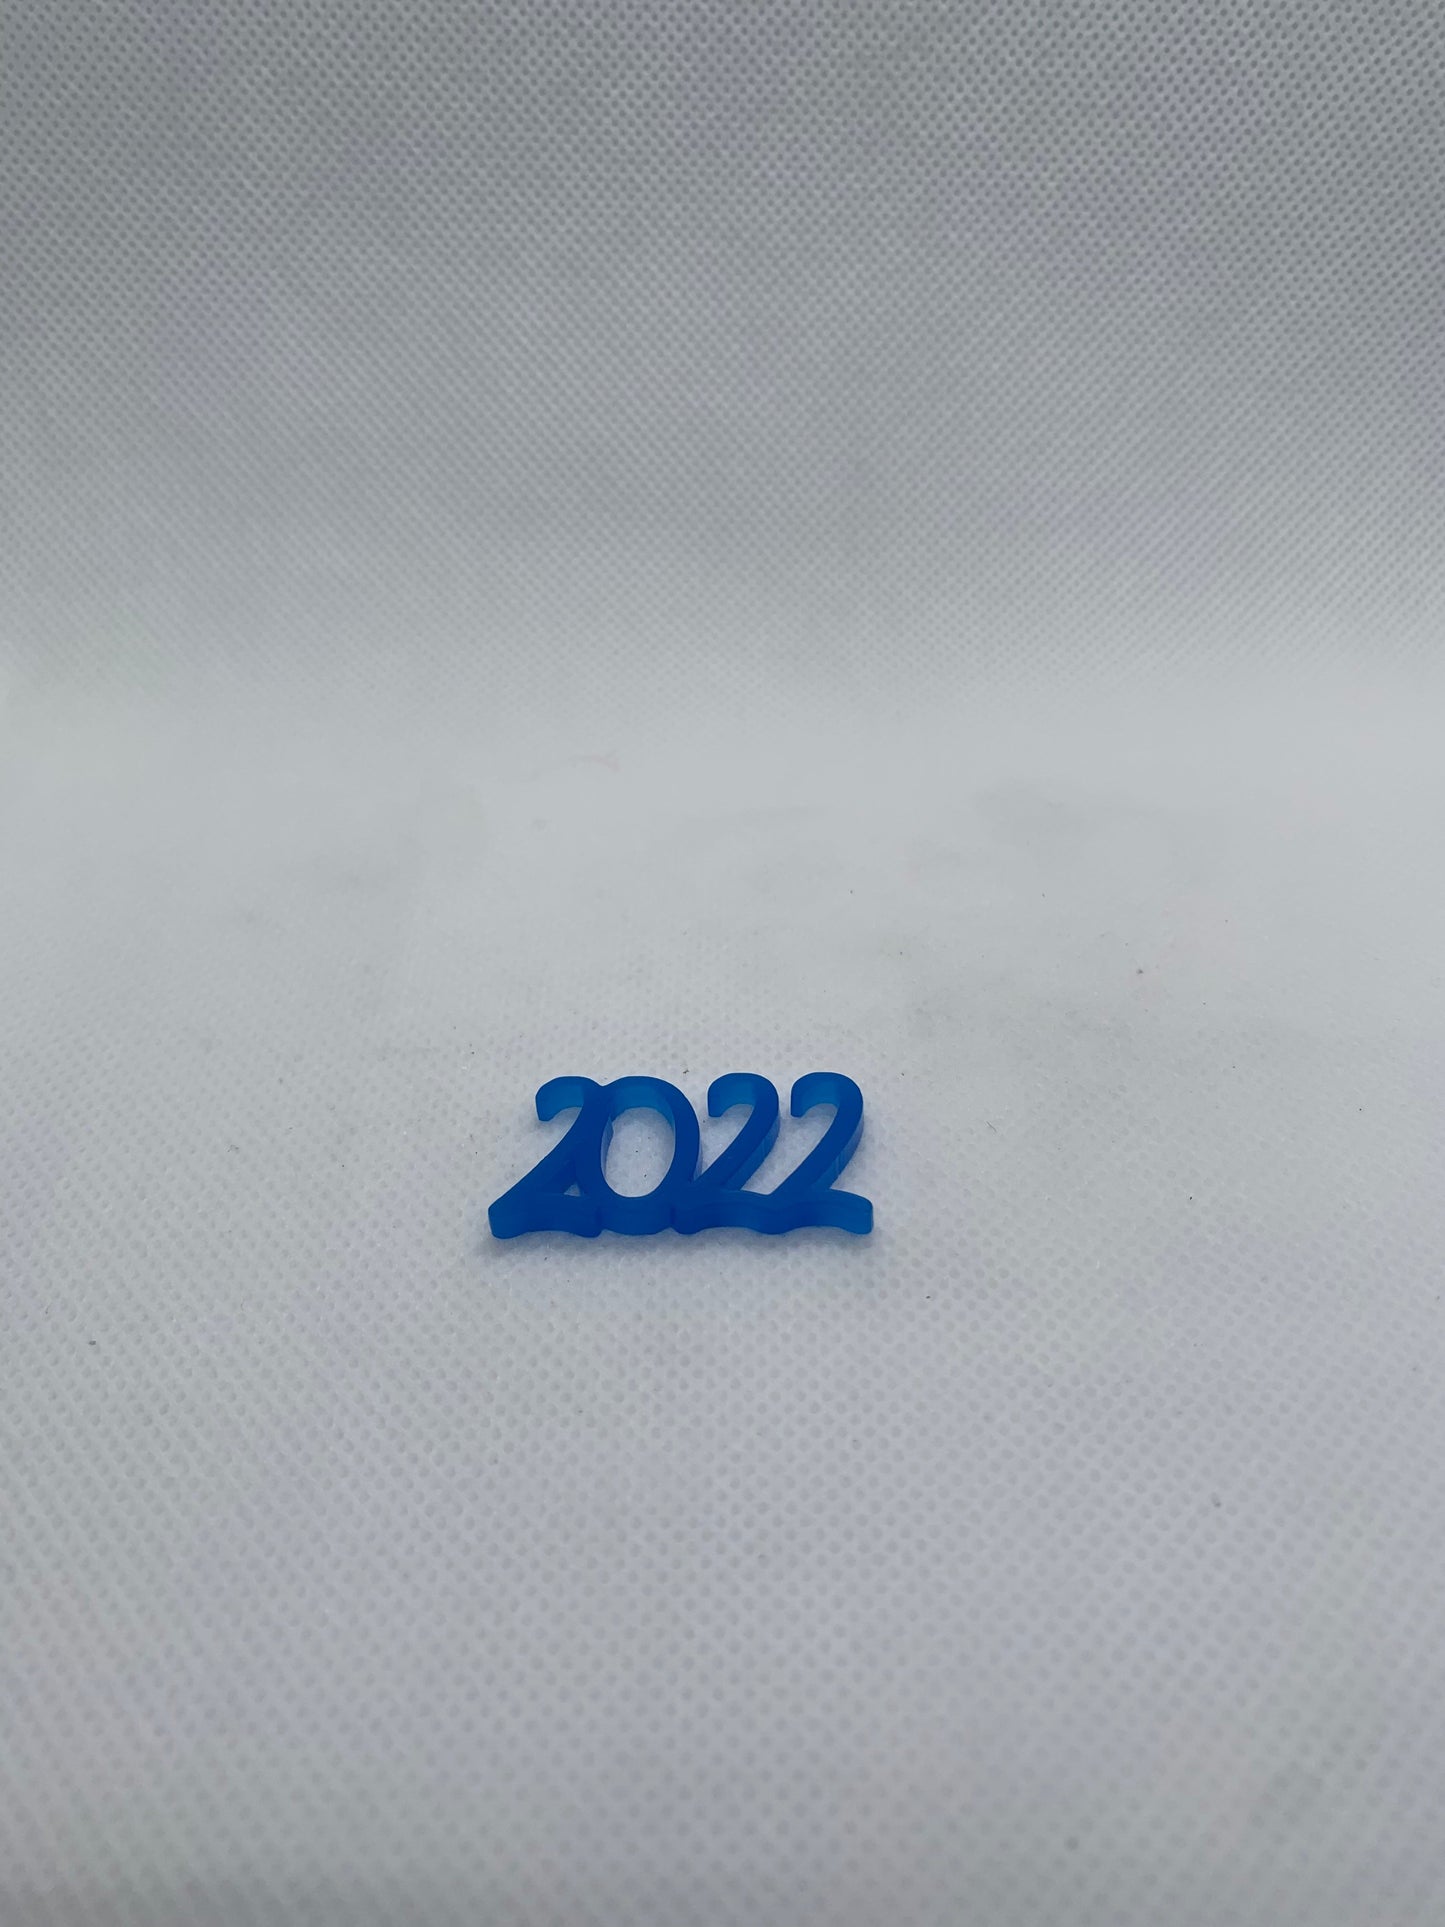 2022 - Blue - Creative Designs By Kari